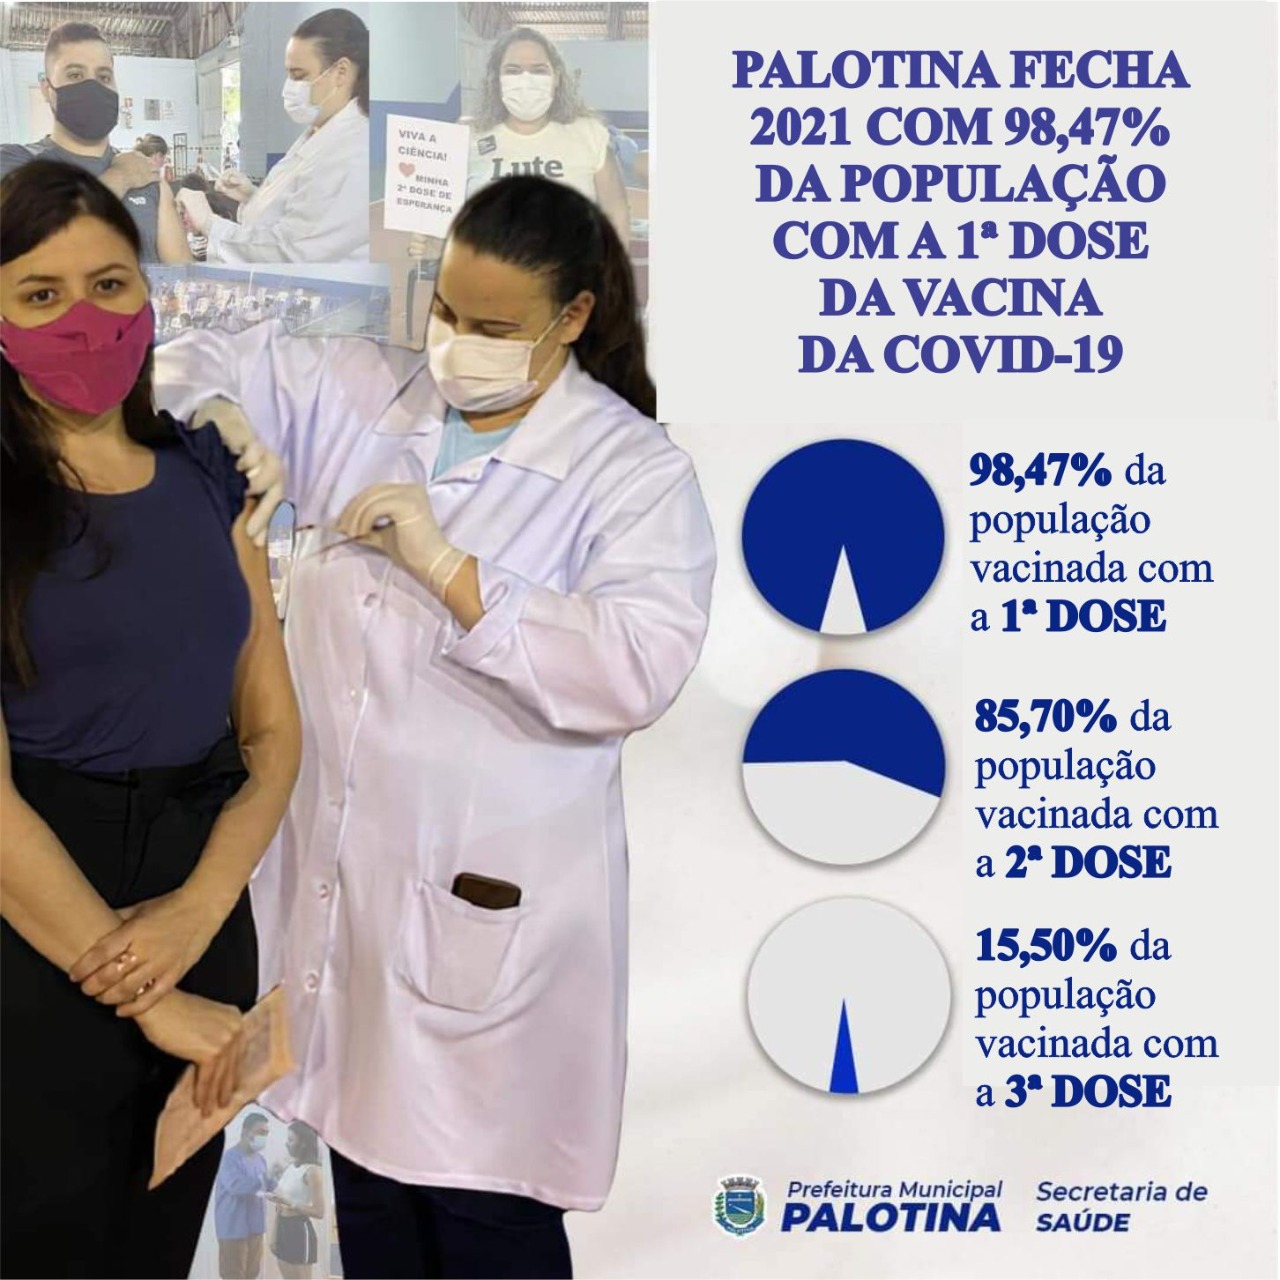 VACINAÇÃO COVID-19 Palotina fecha 2021 com 98,47% da população com a 1ª dose da vacina 